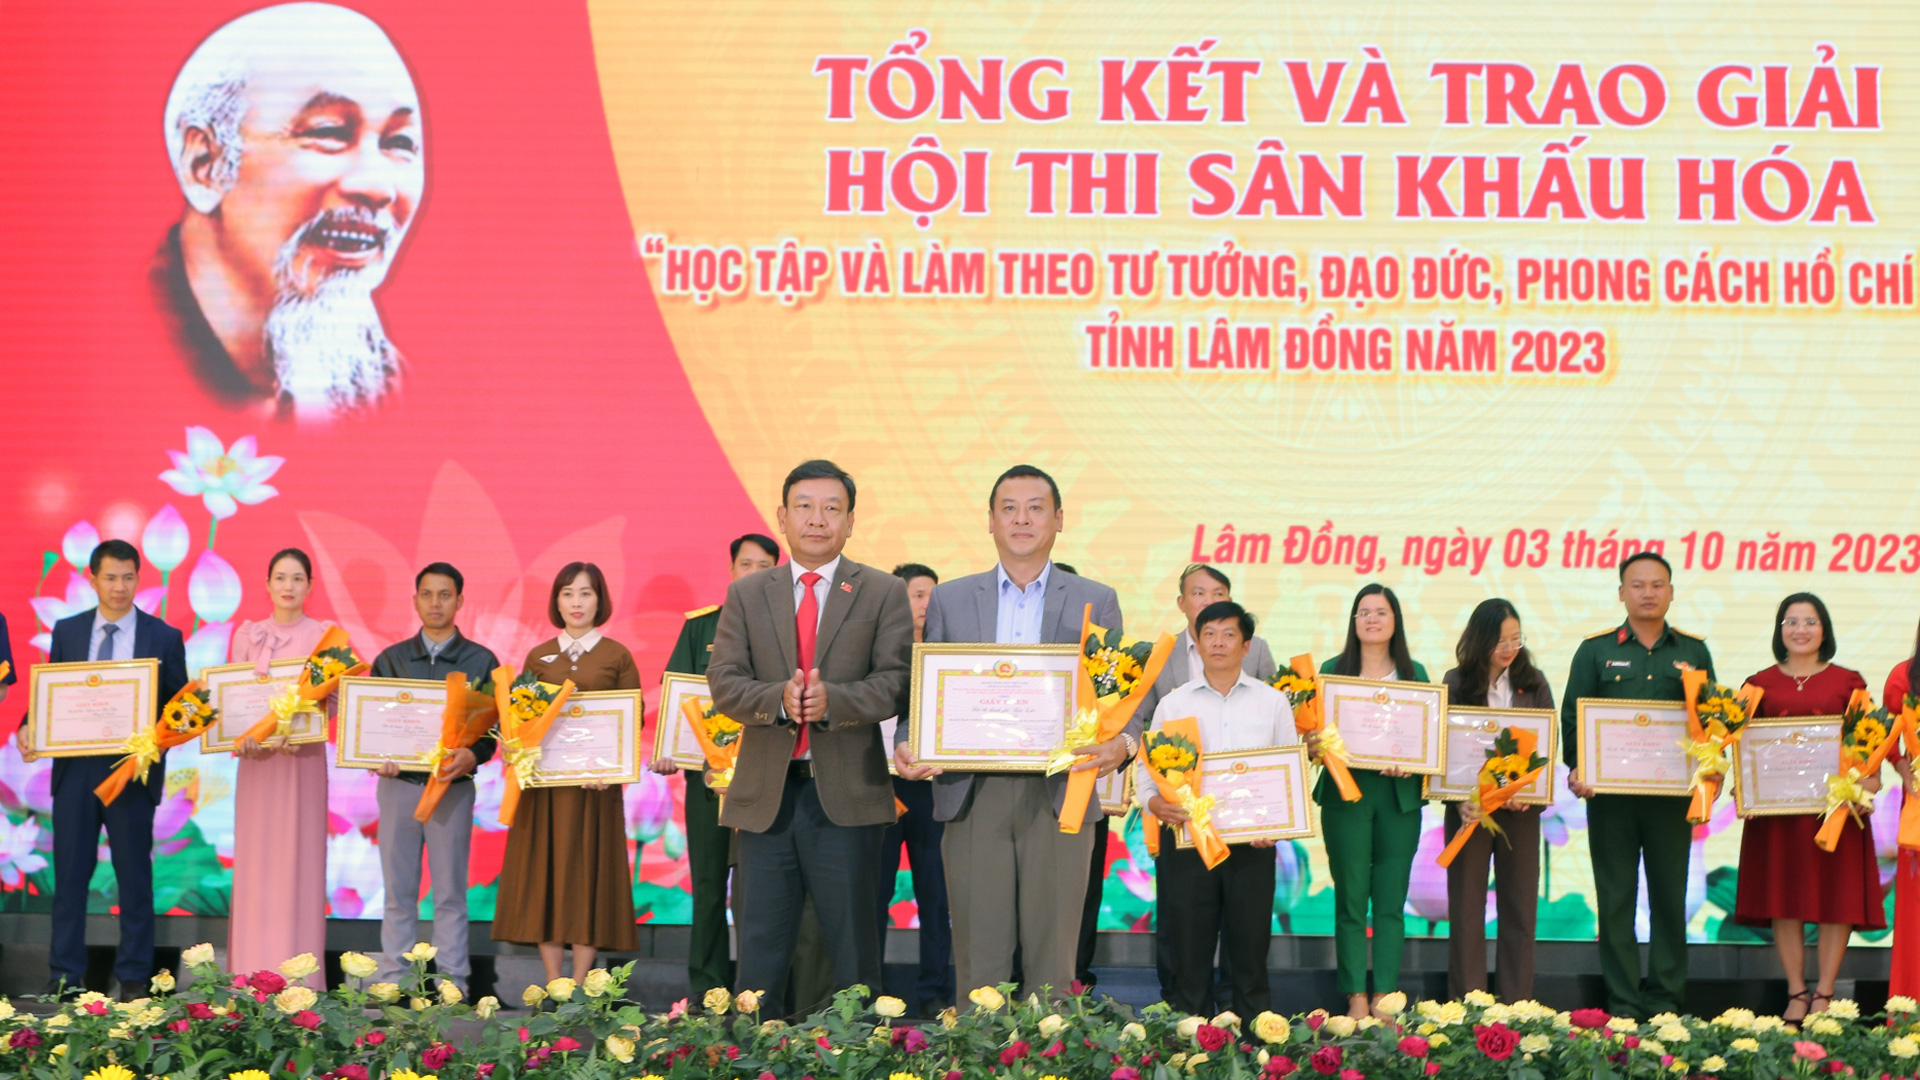 Đội thi thành phố Bảo Lộc đoạt giải Nhất Hội thi sân khấu hóa học tập và làm theo tư tưởng, đạo đức, phong cách Hồ Chí Minh tỉnh Lâm Đồng năm 2023